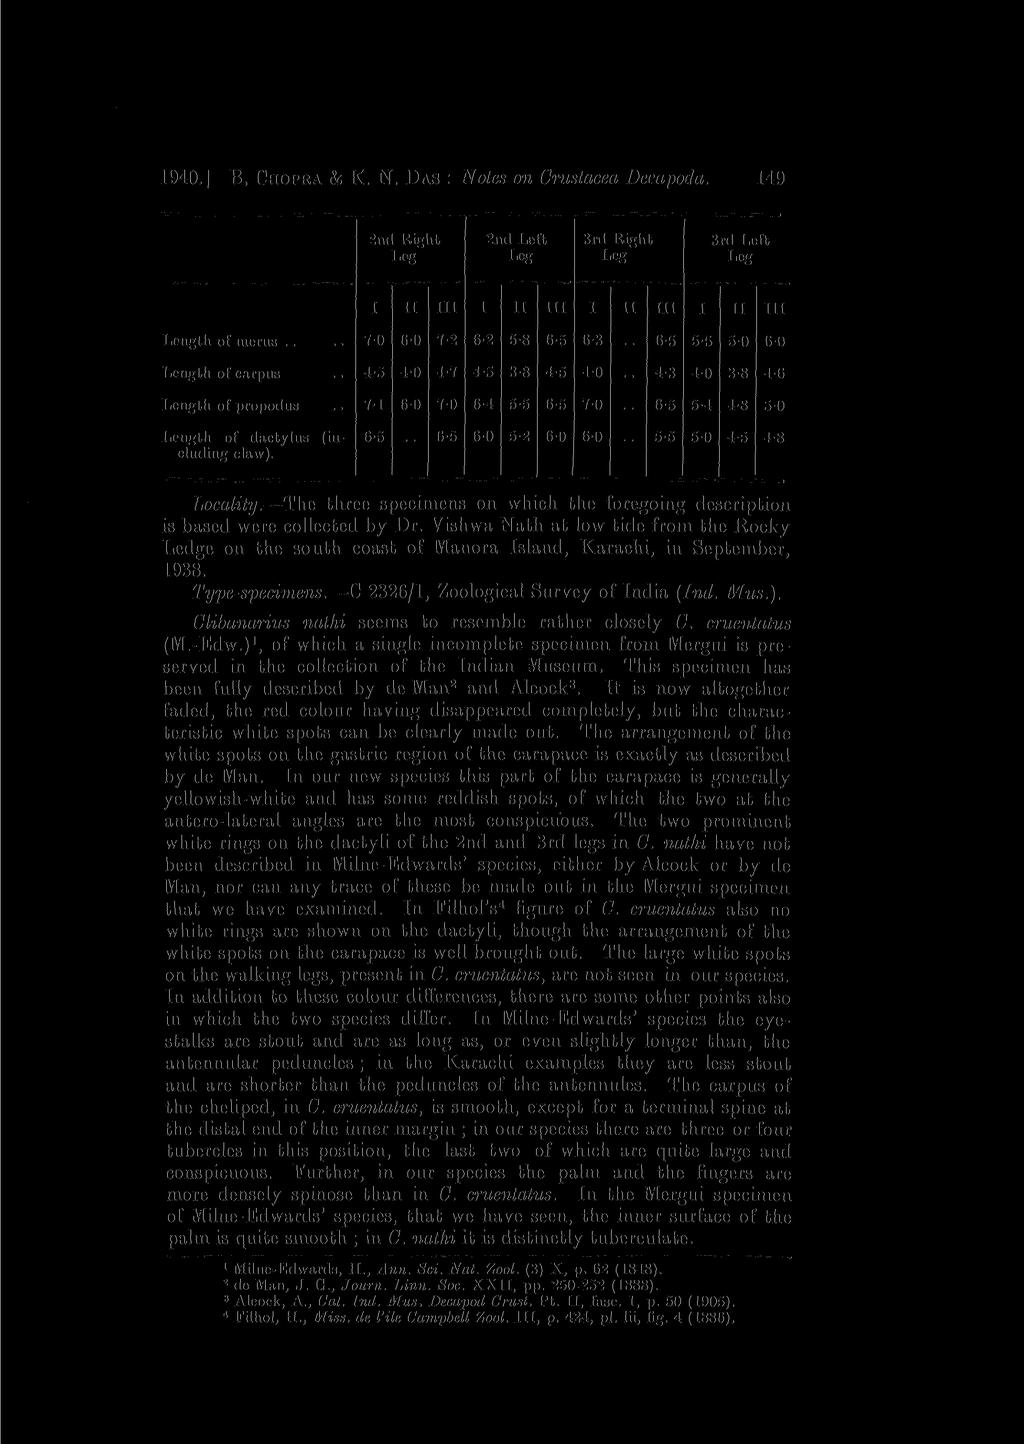 1940.] B. CHOPRA & K. N. 1)AS : Notes on Crustacea Decapod a.